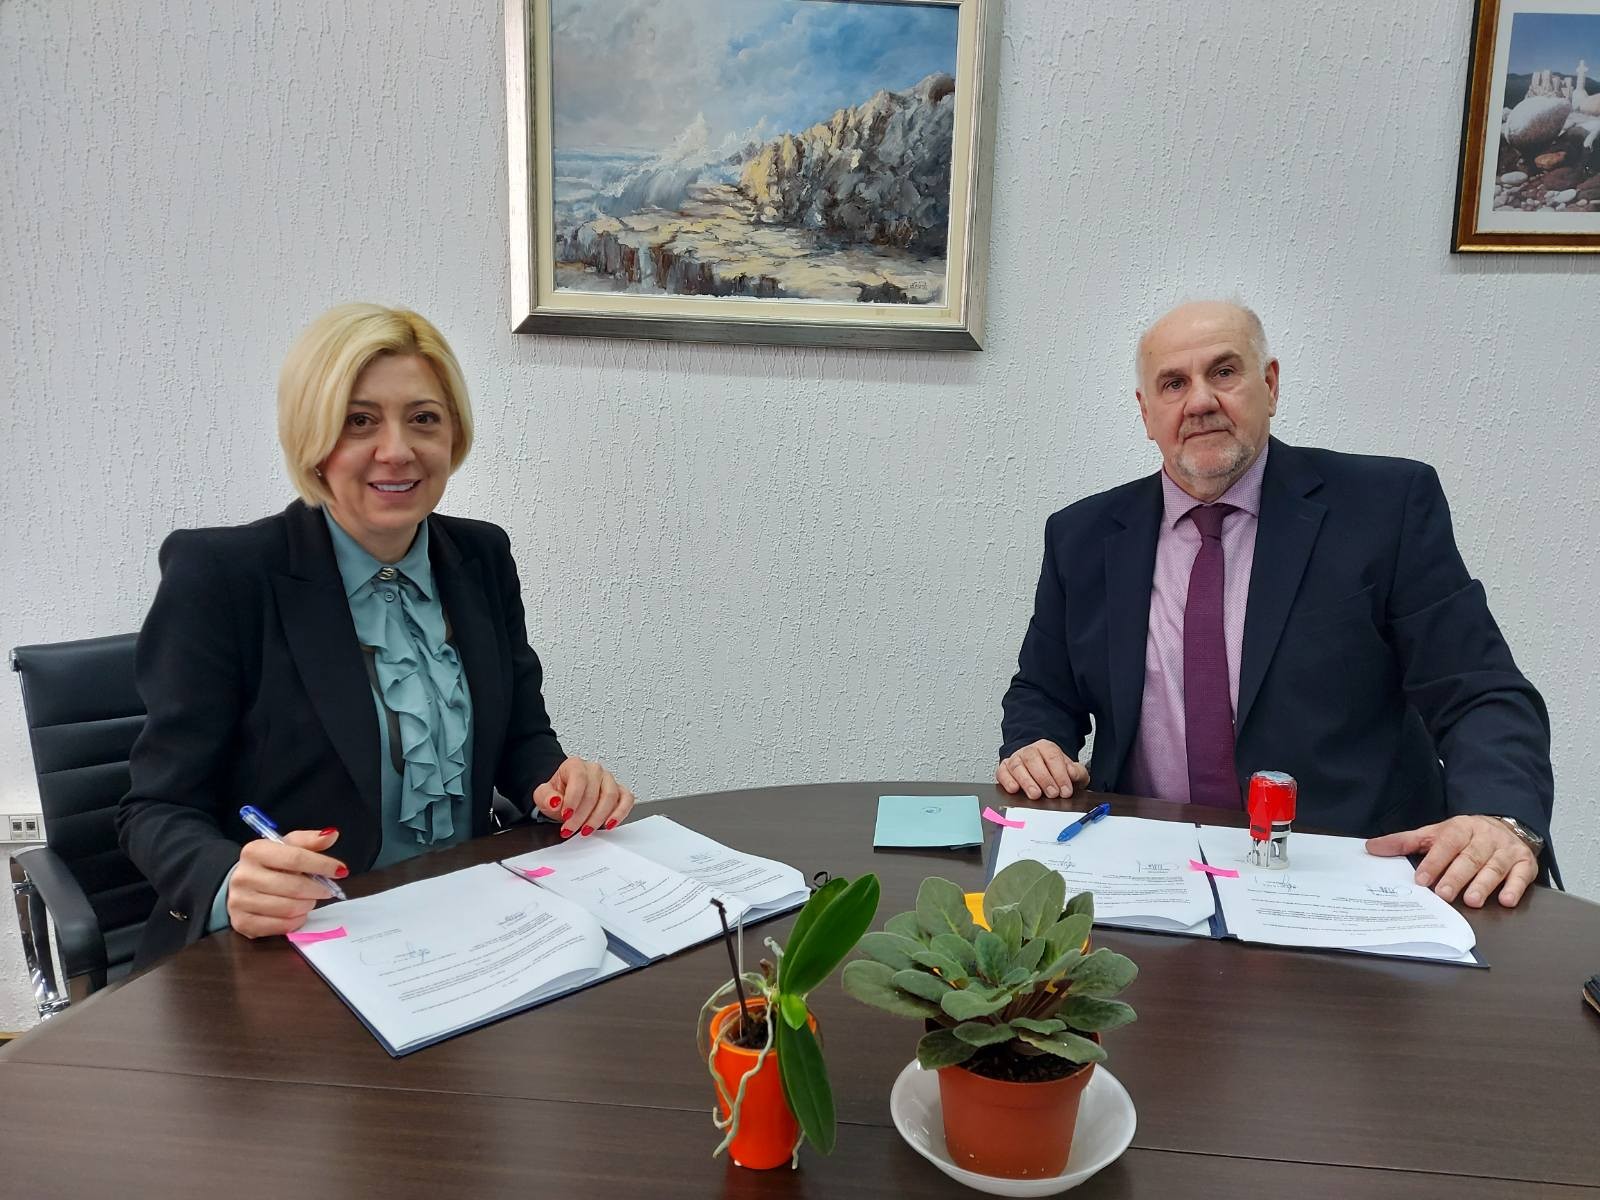 Ministrica Đapo potpisala ugovor: 500 hiljada KM za Spomenik prirode „Tajan“ u ZDK